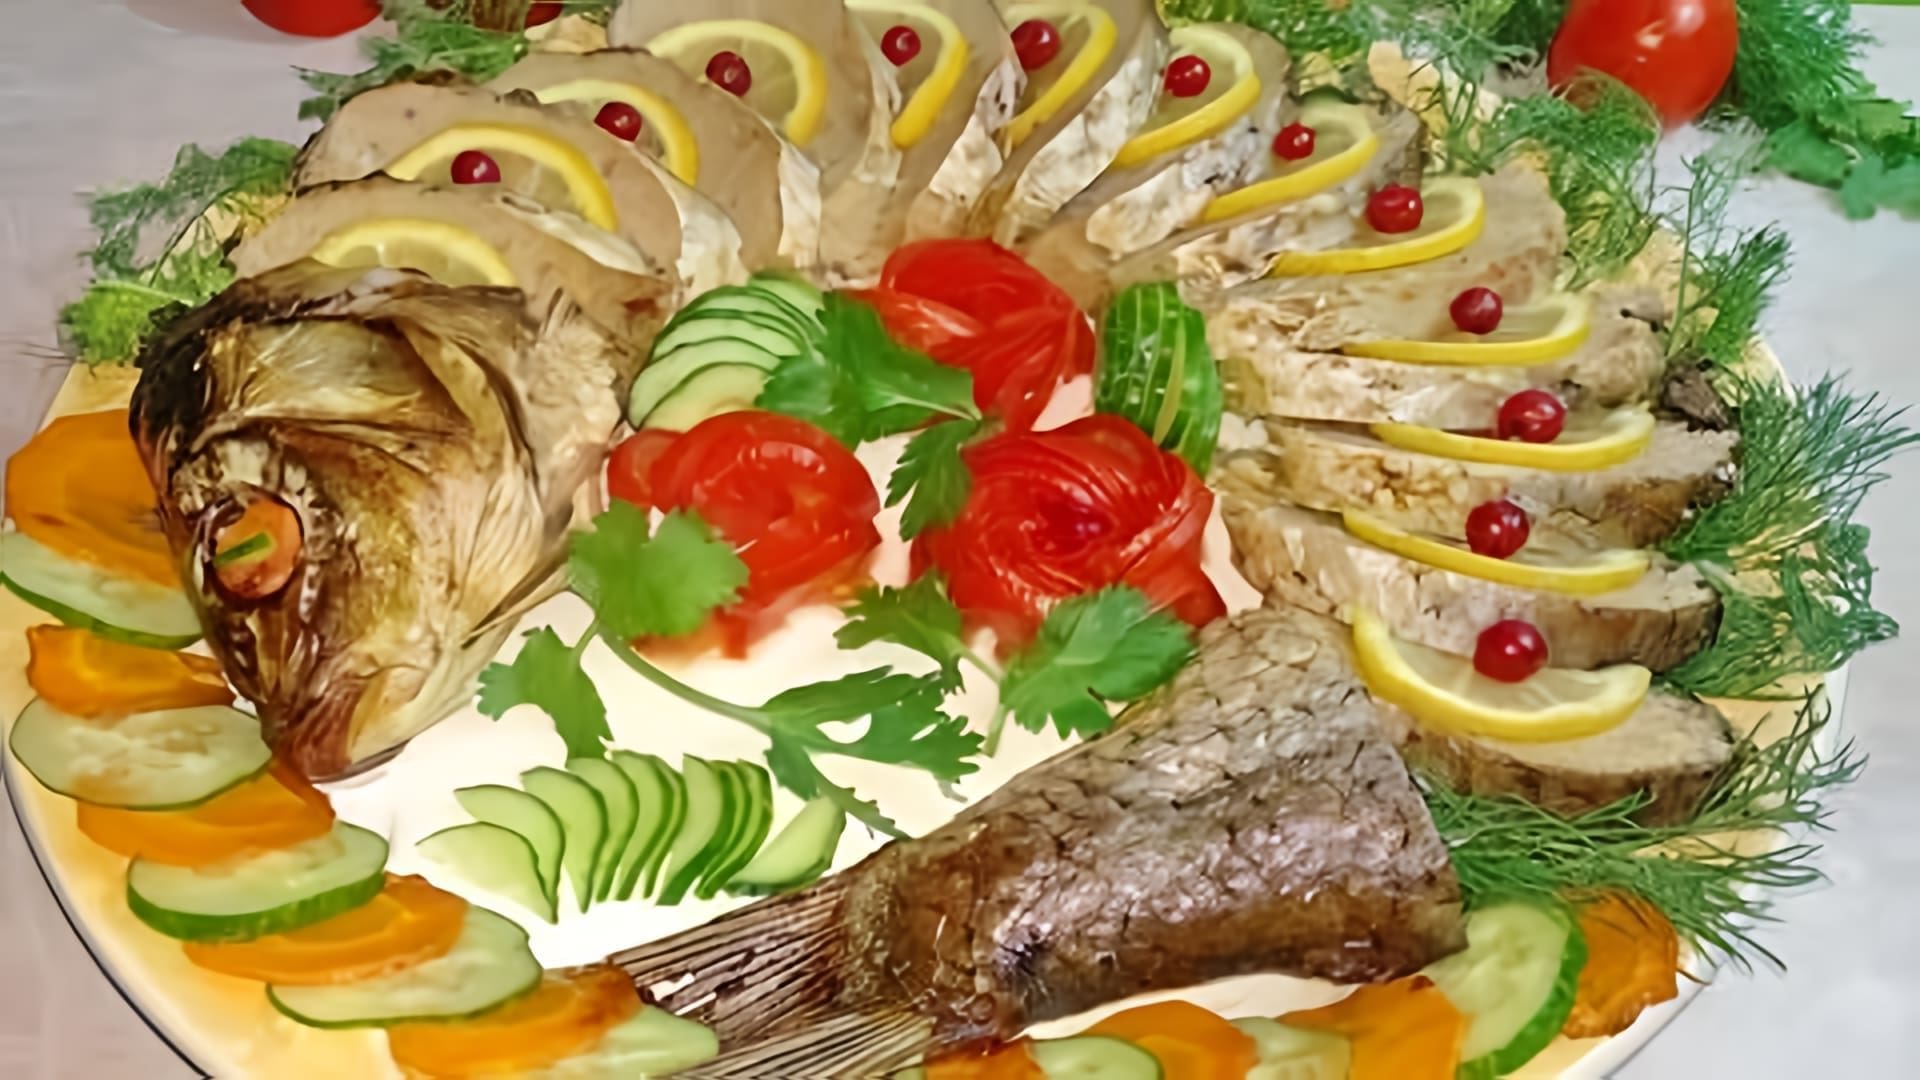 В этом видео демонстрируется процесс приготовления фаршированного карпа, который является популярным блюдом на праздничном столе